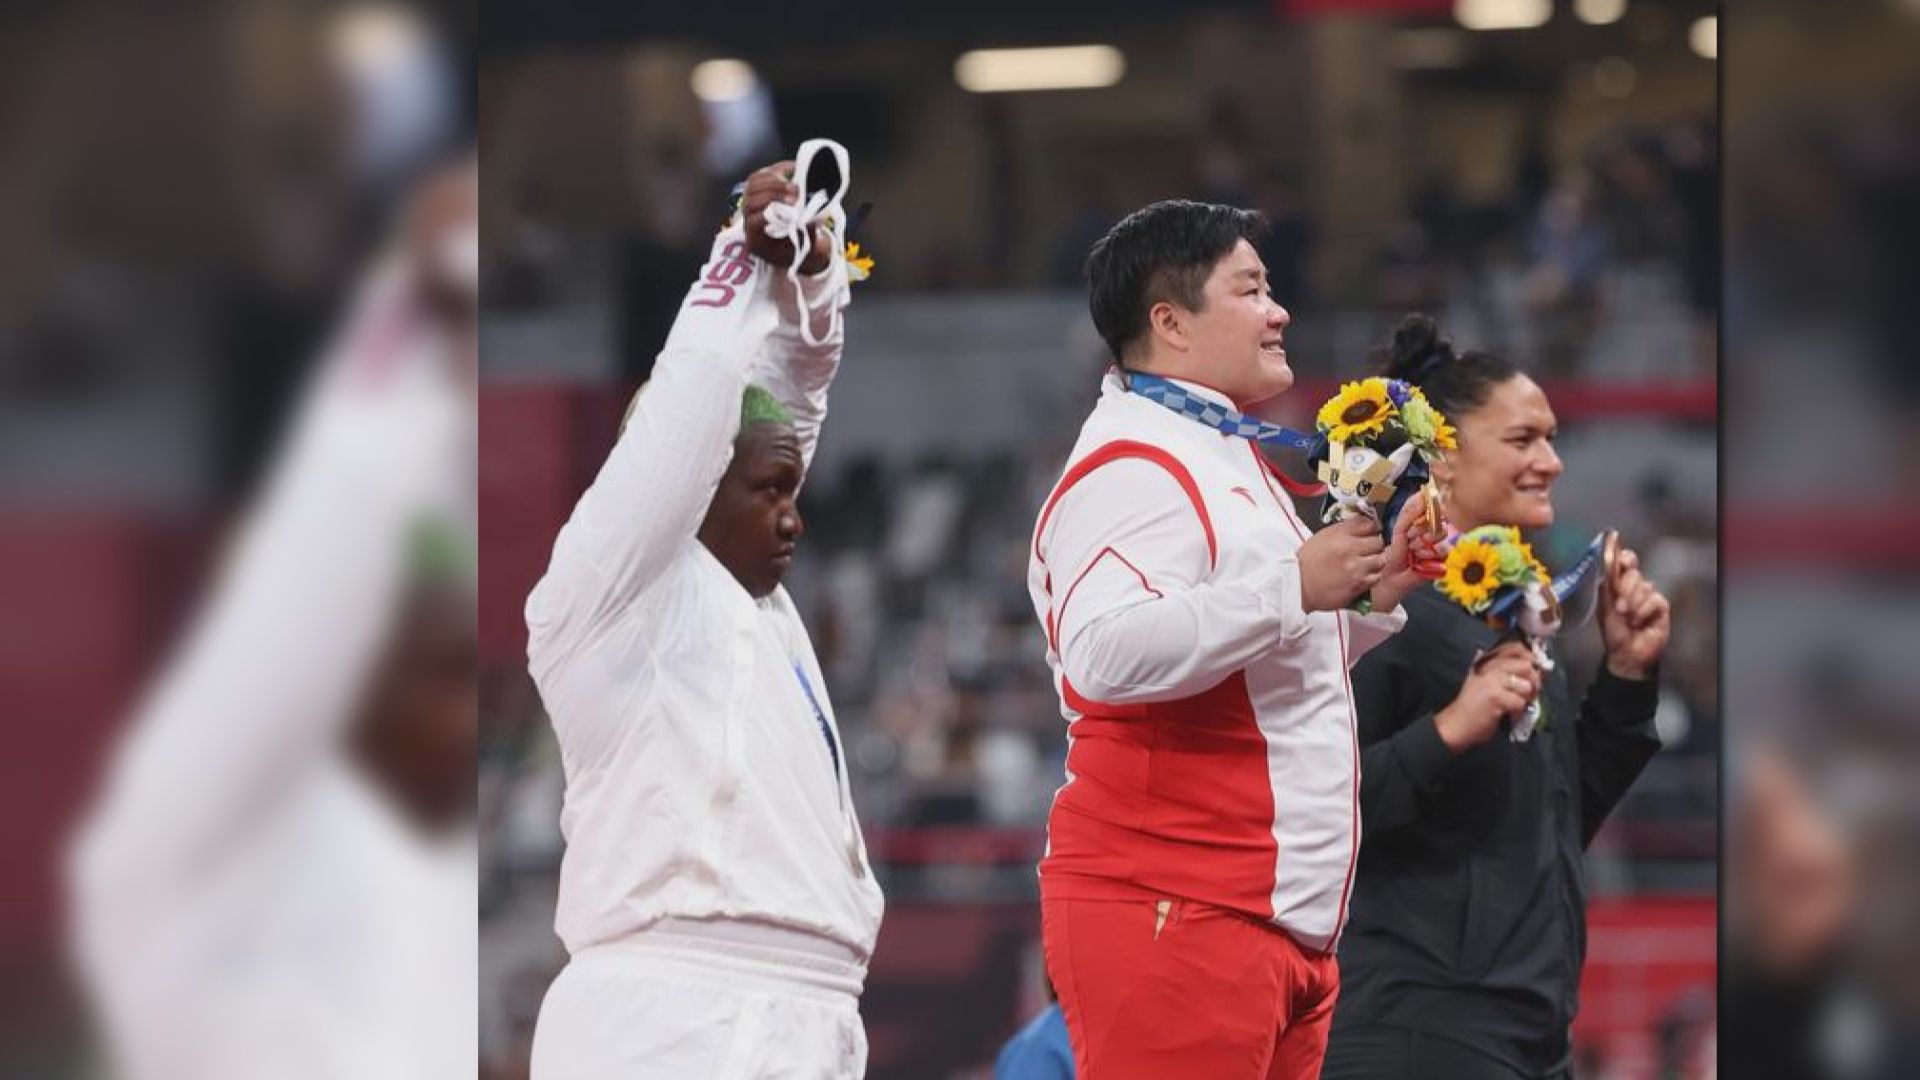 美國奧委會指選手頒獎台展示抗議手勢不違規